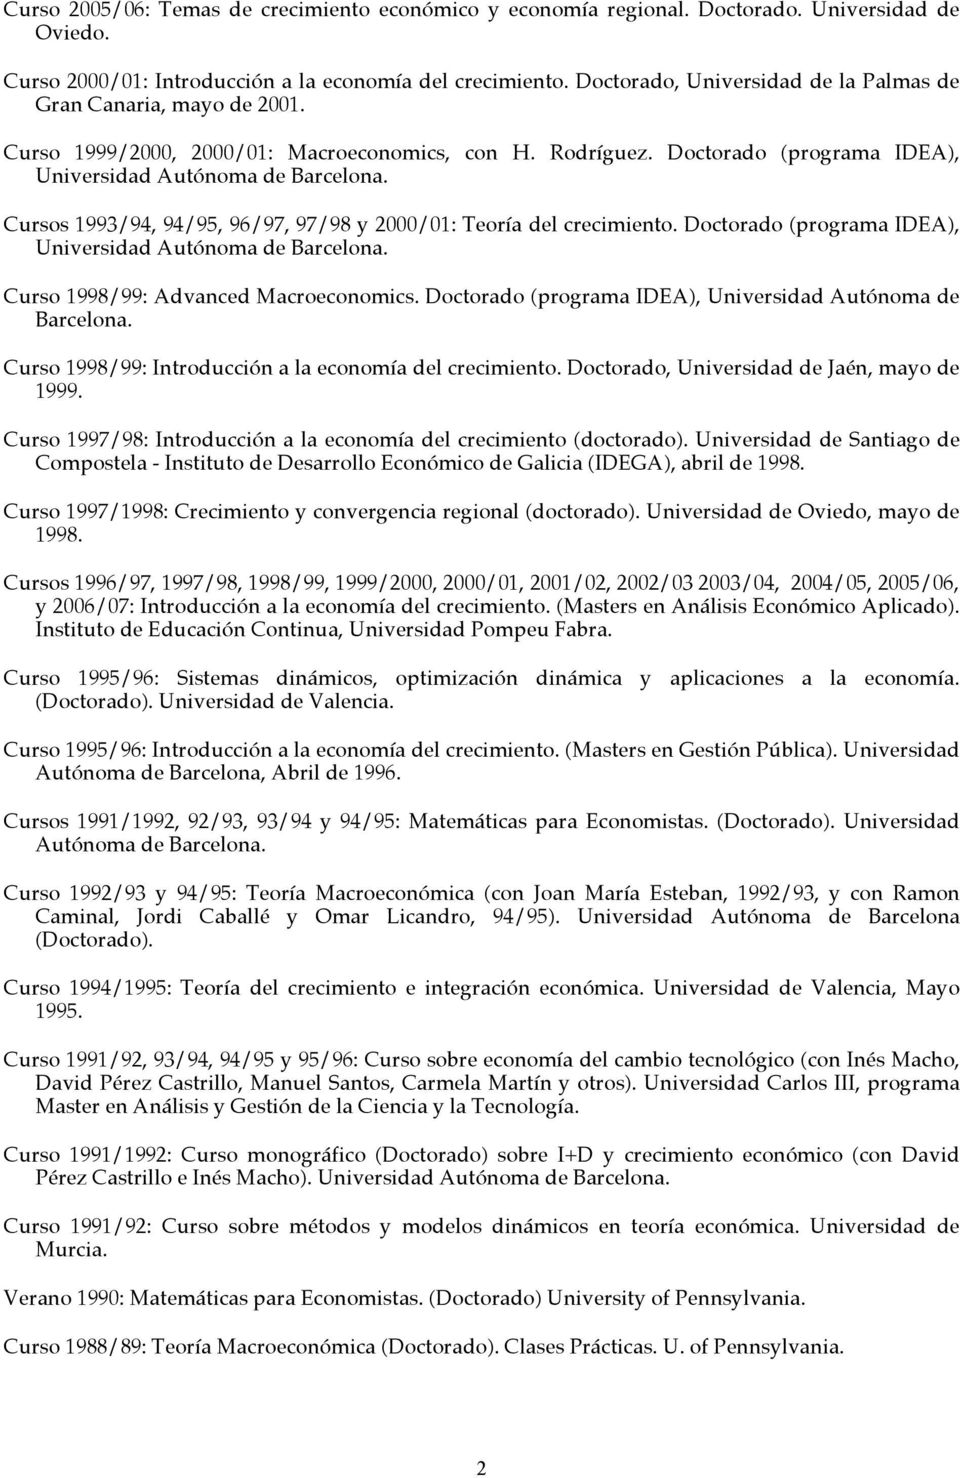 Cursos 1993/94, 94/95, 96/97, 97/98 y 2000/01: Teoría del crecimiento. Doctorado (programa IDEA), Universidad Autónoma de Barcelona. Curso 1998/99: Advanced Macroeconomics.